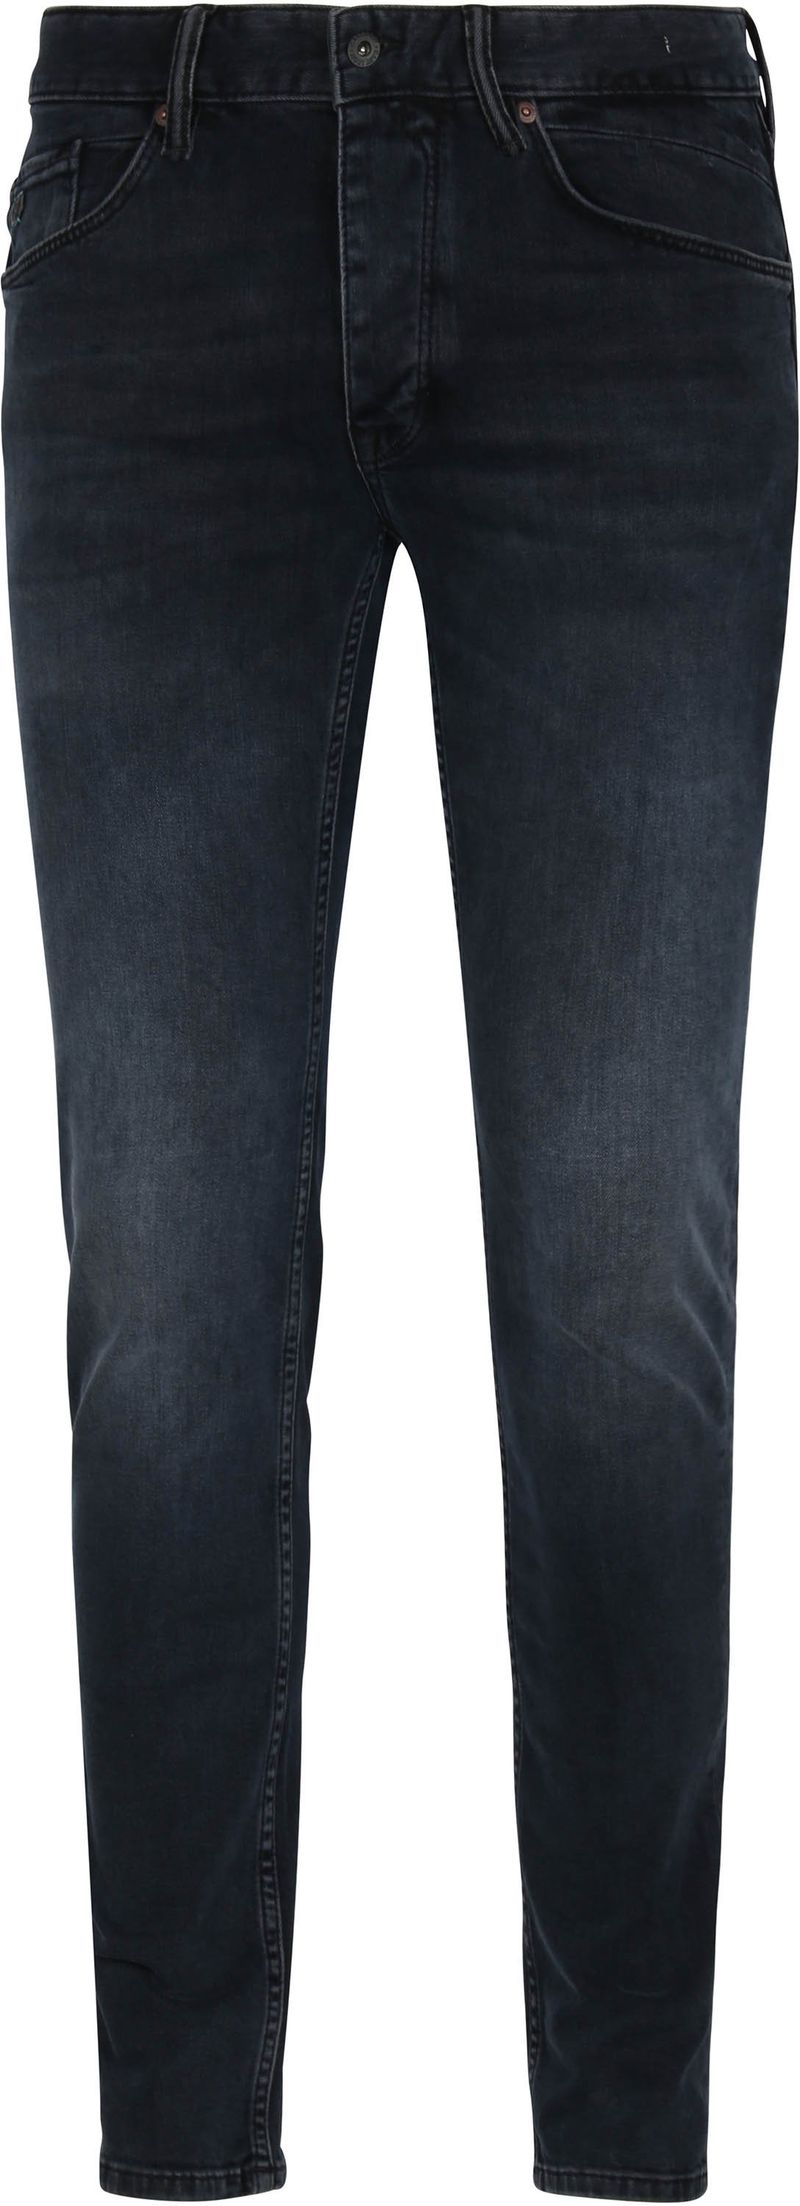 Cast Iron Riser Slim Jeans Vintage Washed Denim Schwarz - Größe W 34 - L 32 von Cast Iron